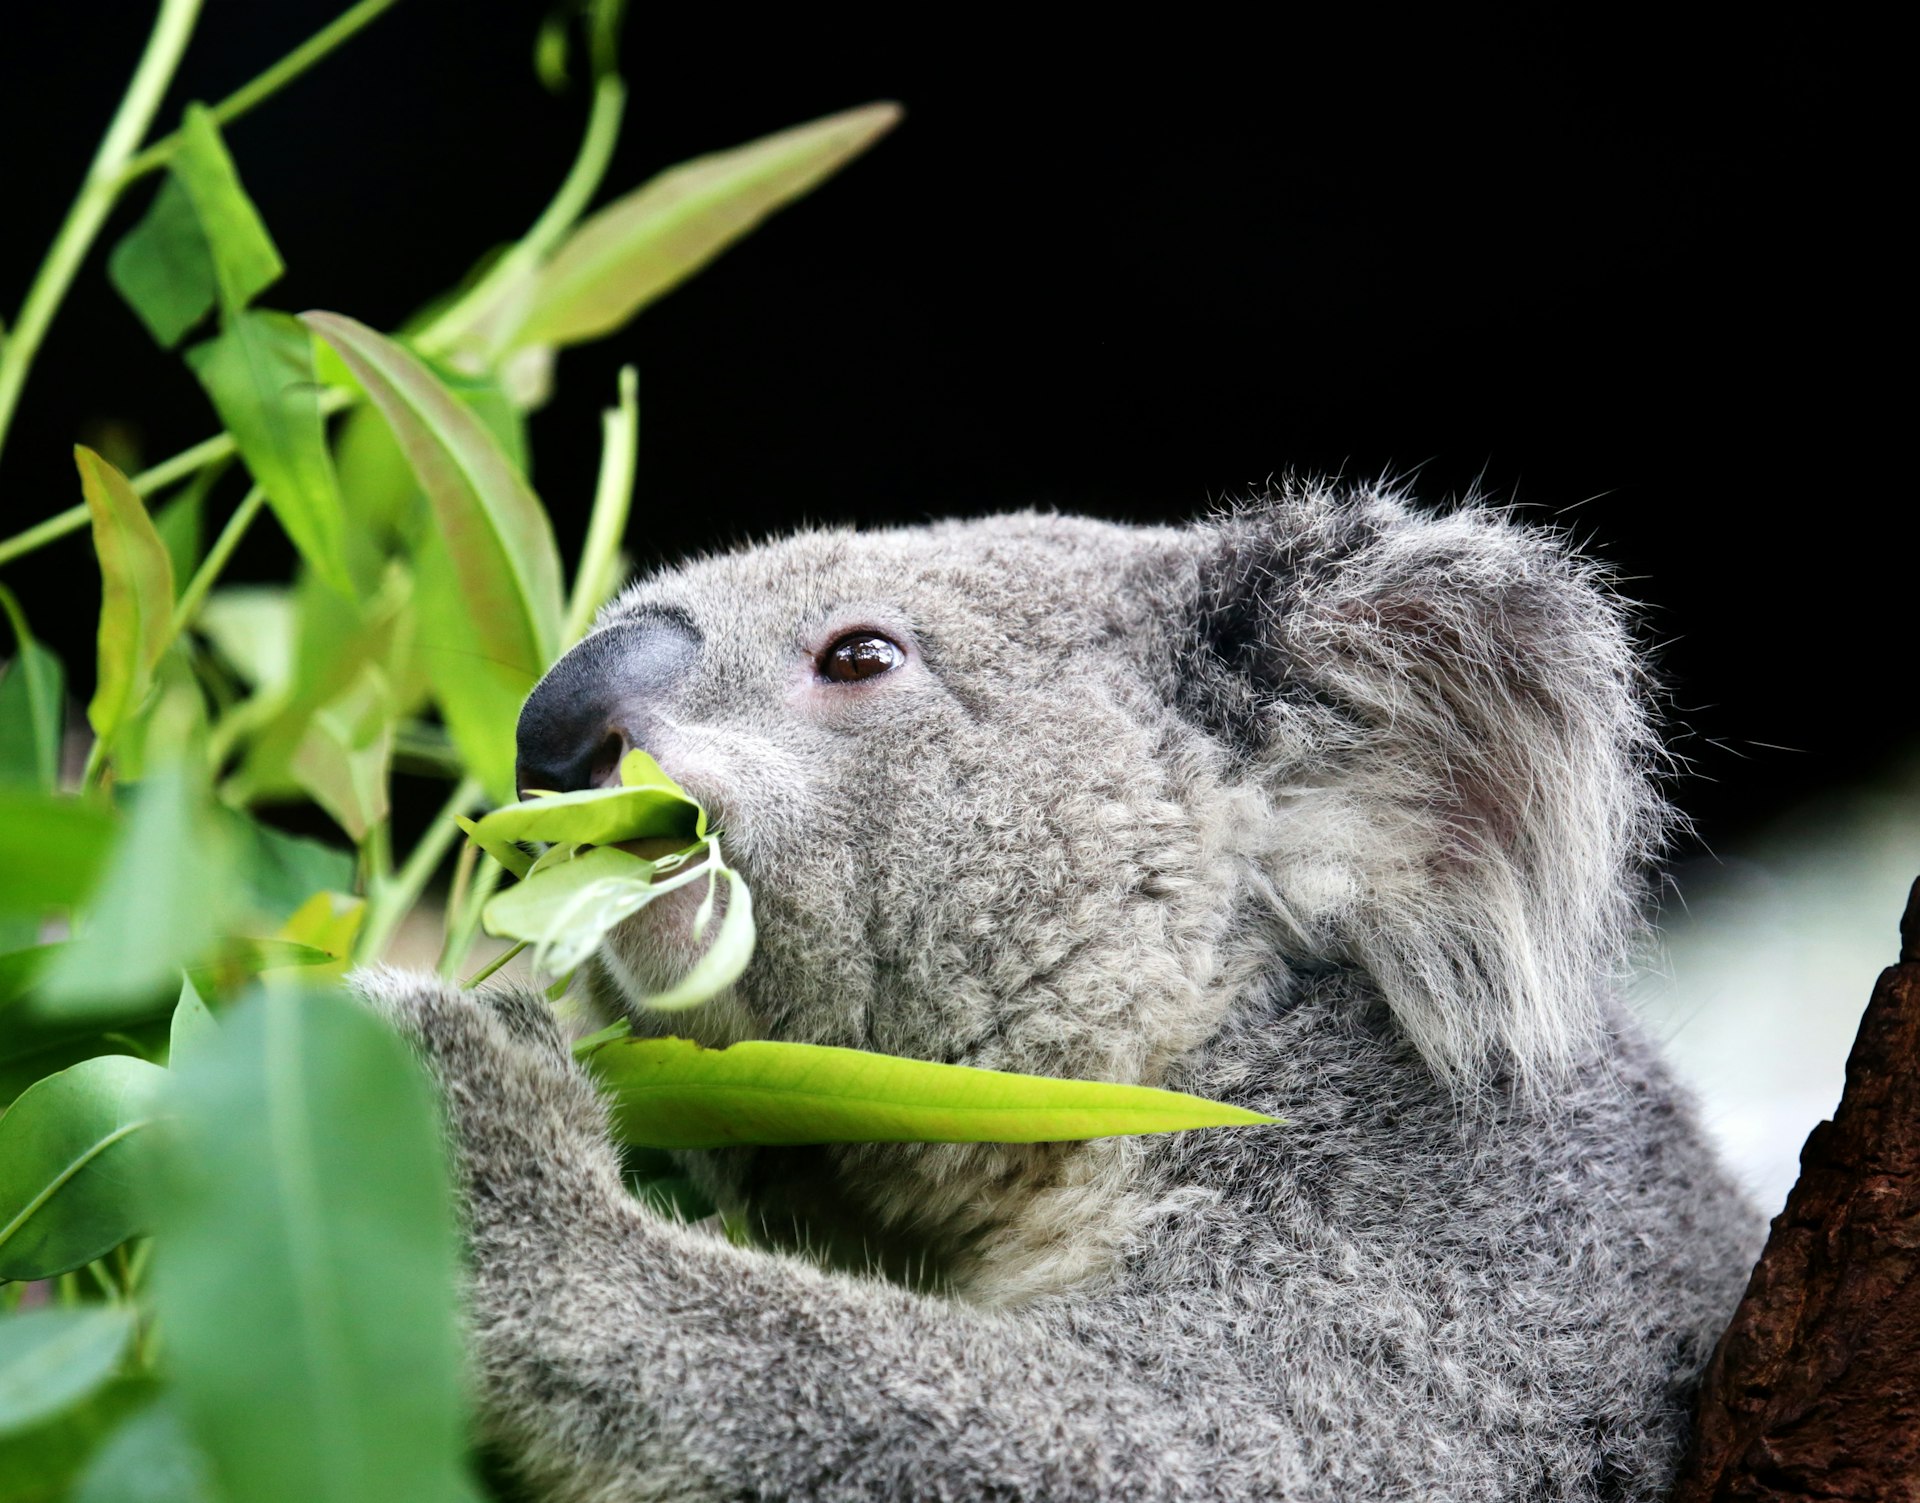 Koala eating eucalyptus leaves at Lone Pine Koala Sanctuary